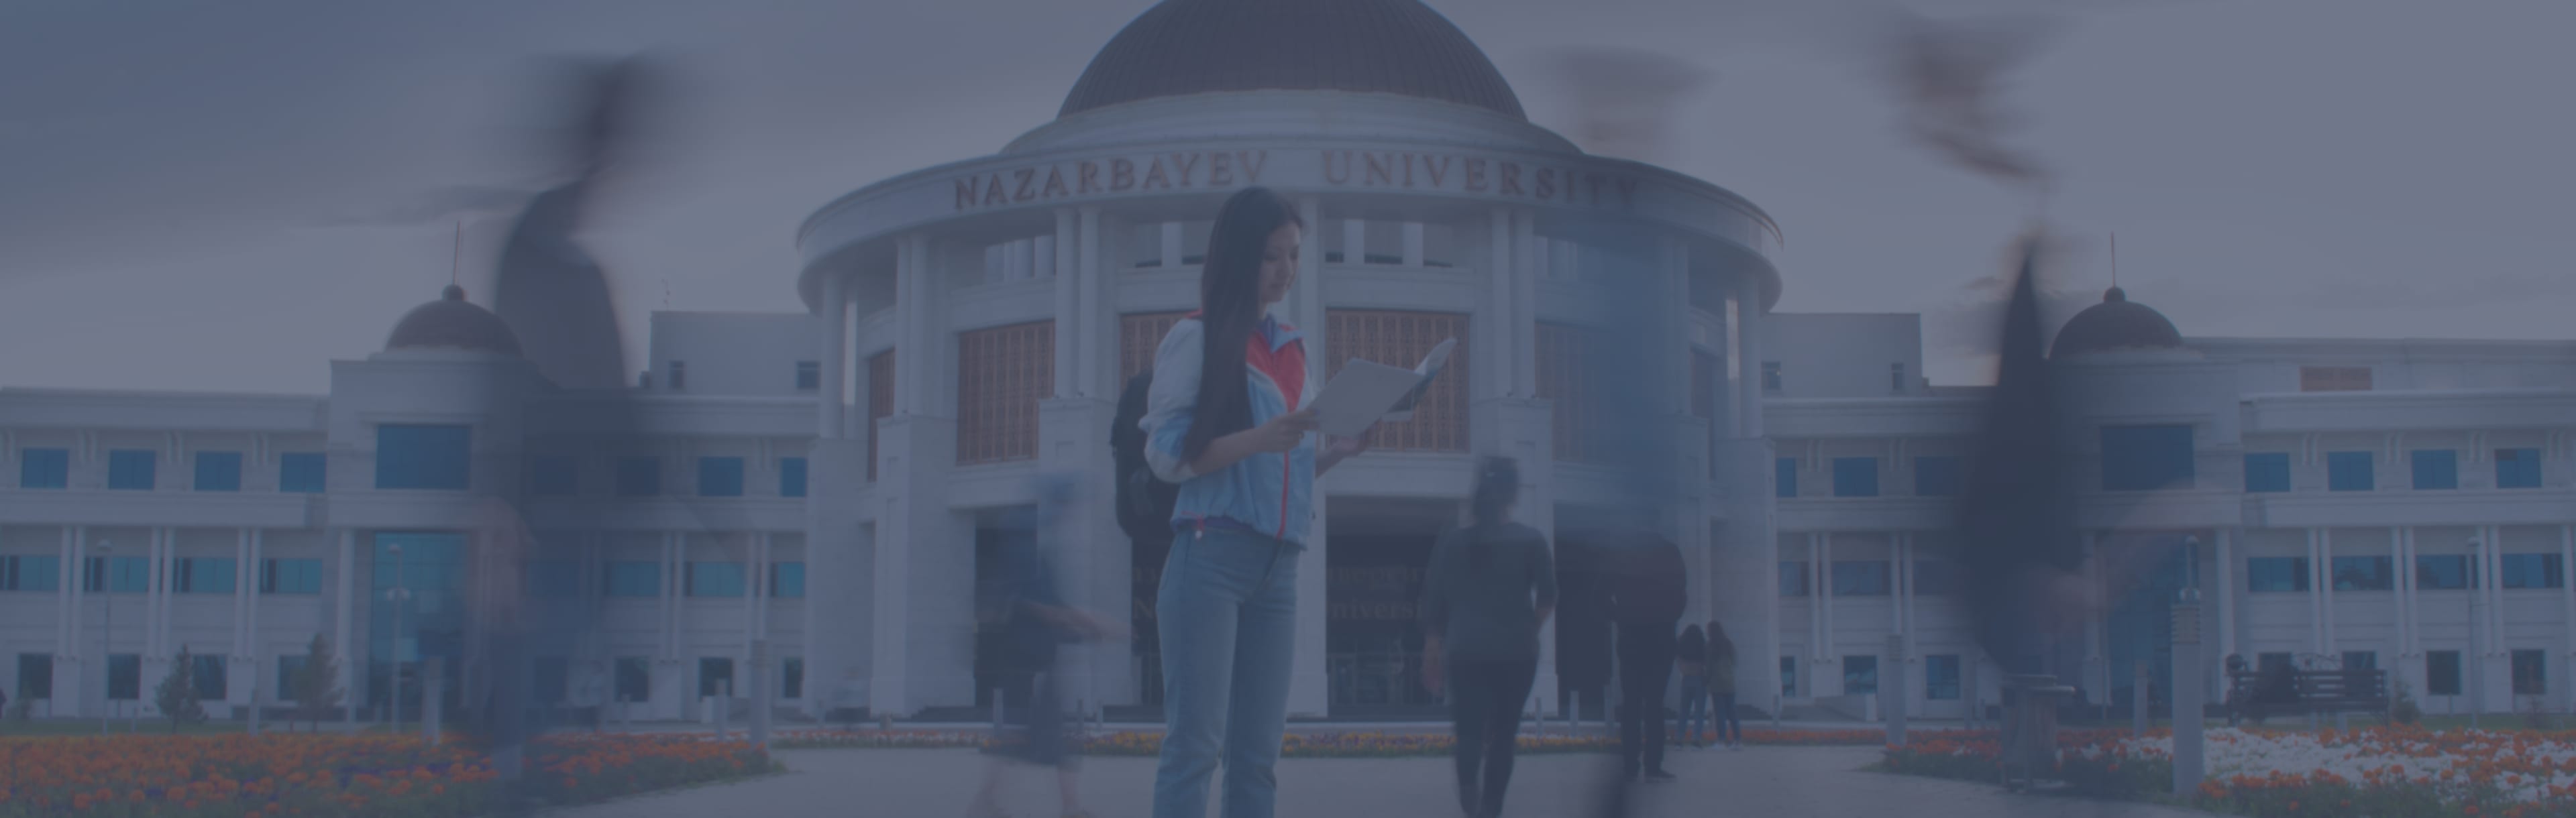 Nazarbayev University PhD in openbaar beleid